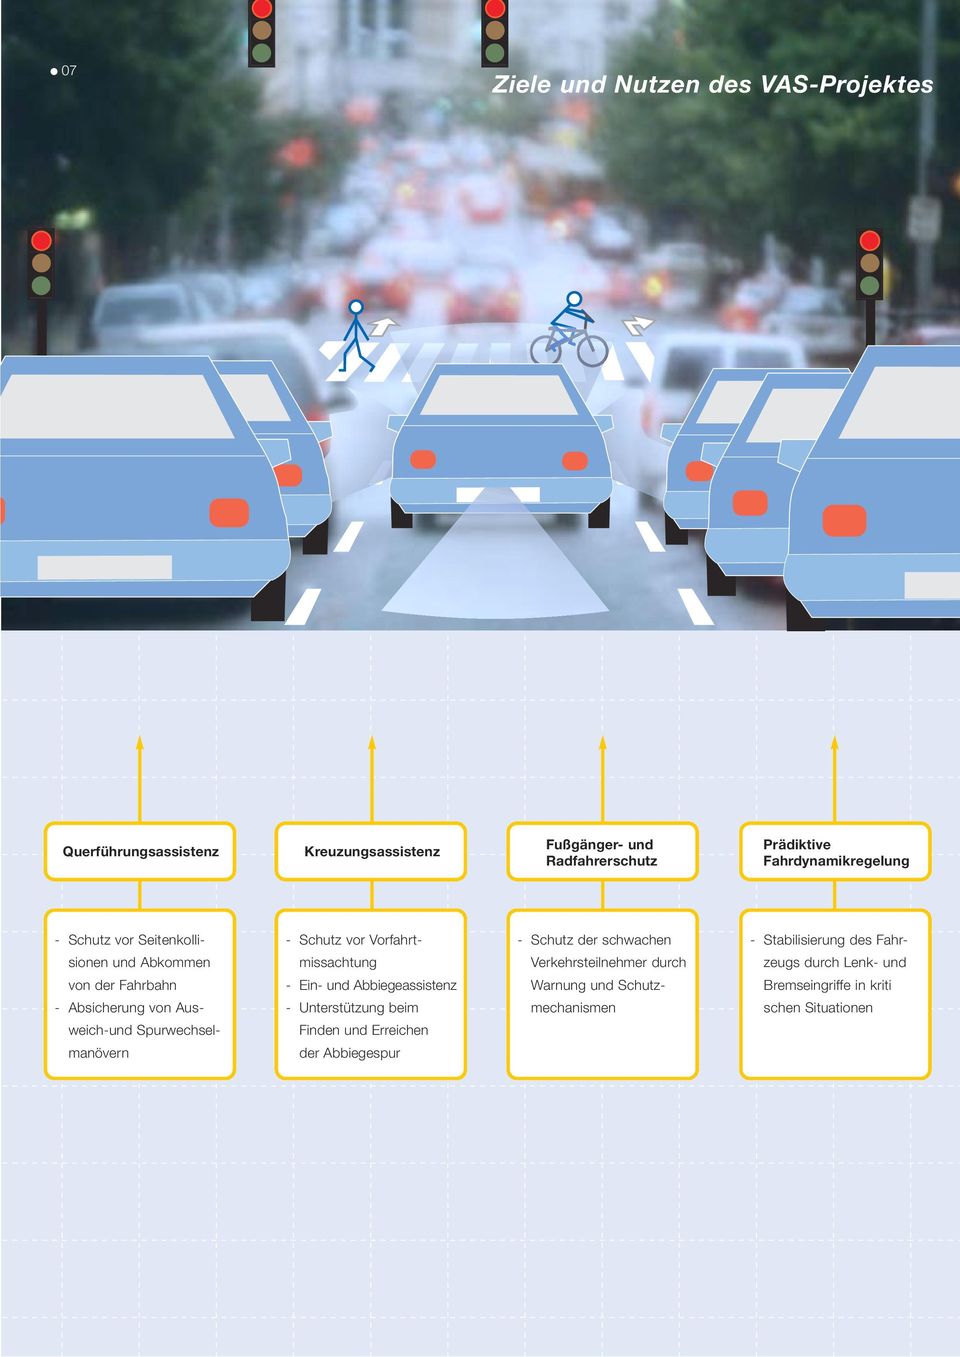 Abkommen missachtung Verkehrsteilnehmer durch zeugs durch Lenk- und von der Fahrbahn - Ein- und Abbiegeassistenz Warnung und Schutz-